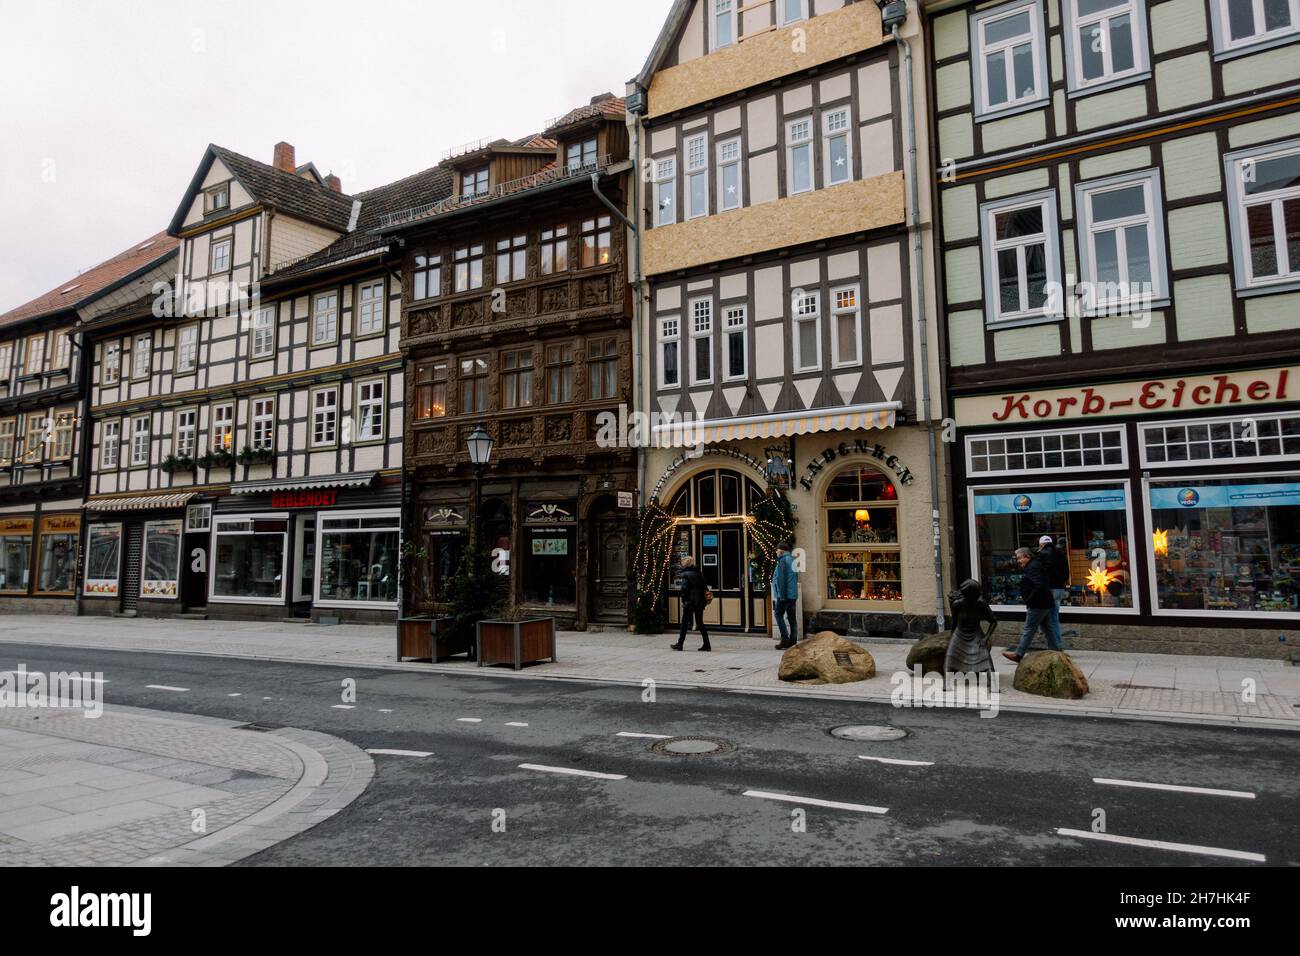 WERNIGERODE, DEUTSCHLAND - 24. Dez 2019: Ein schöner Blick auf die  Stadtgebäude in Wernigerode Stockfotografie - Alamy